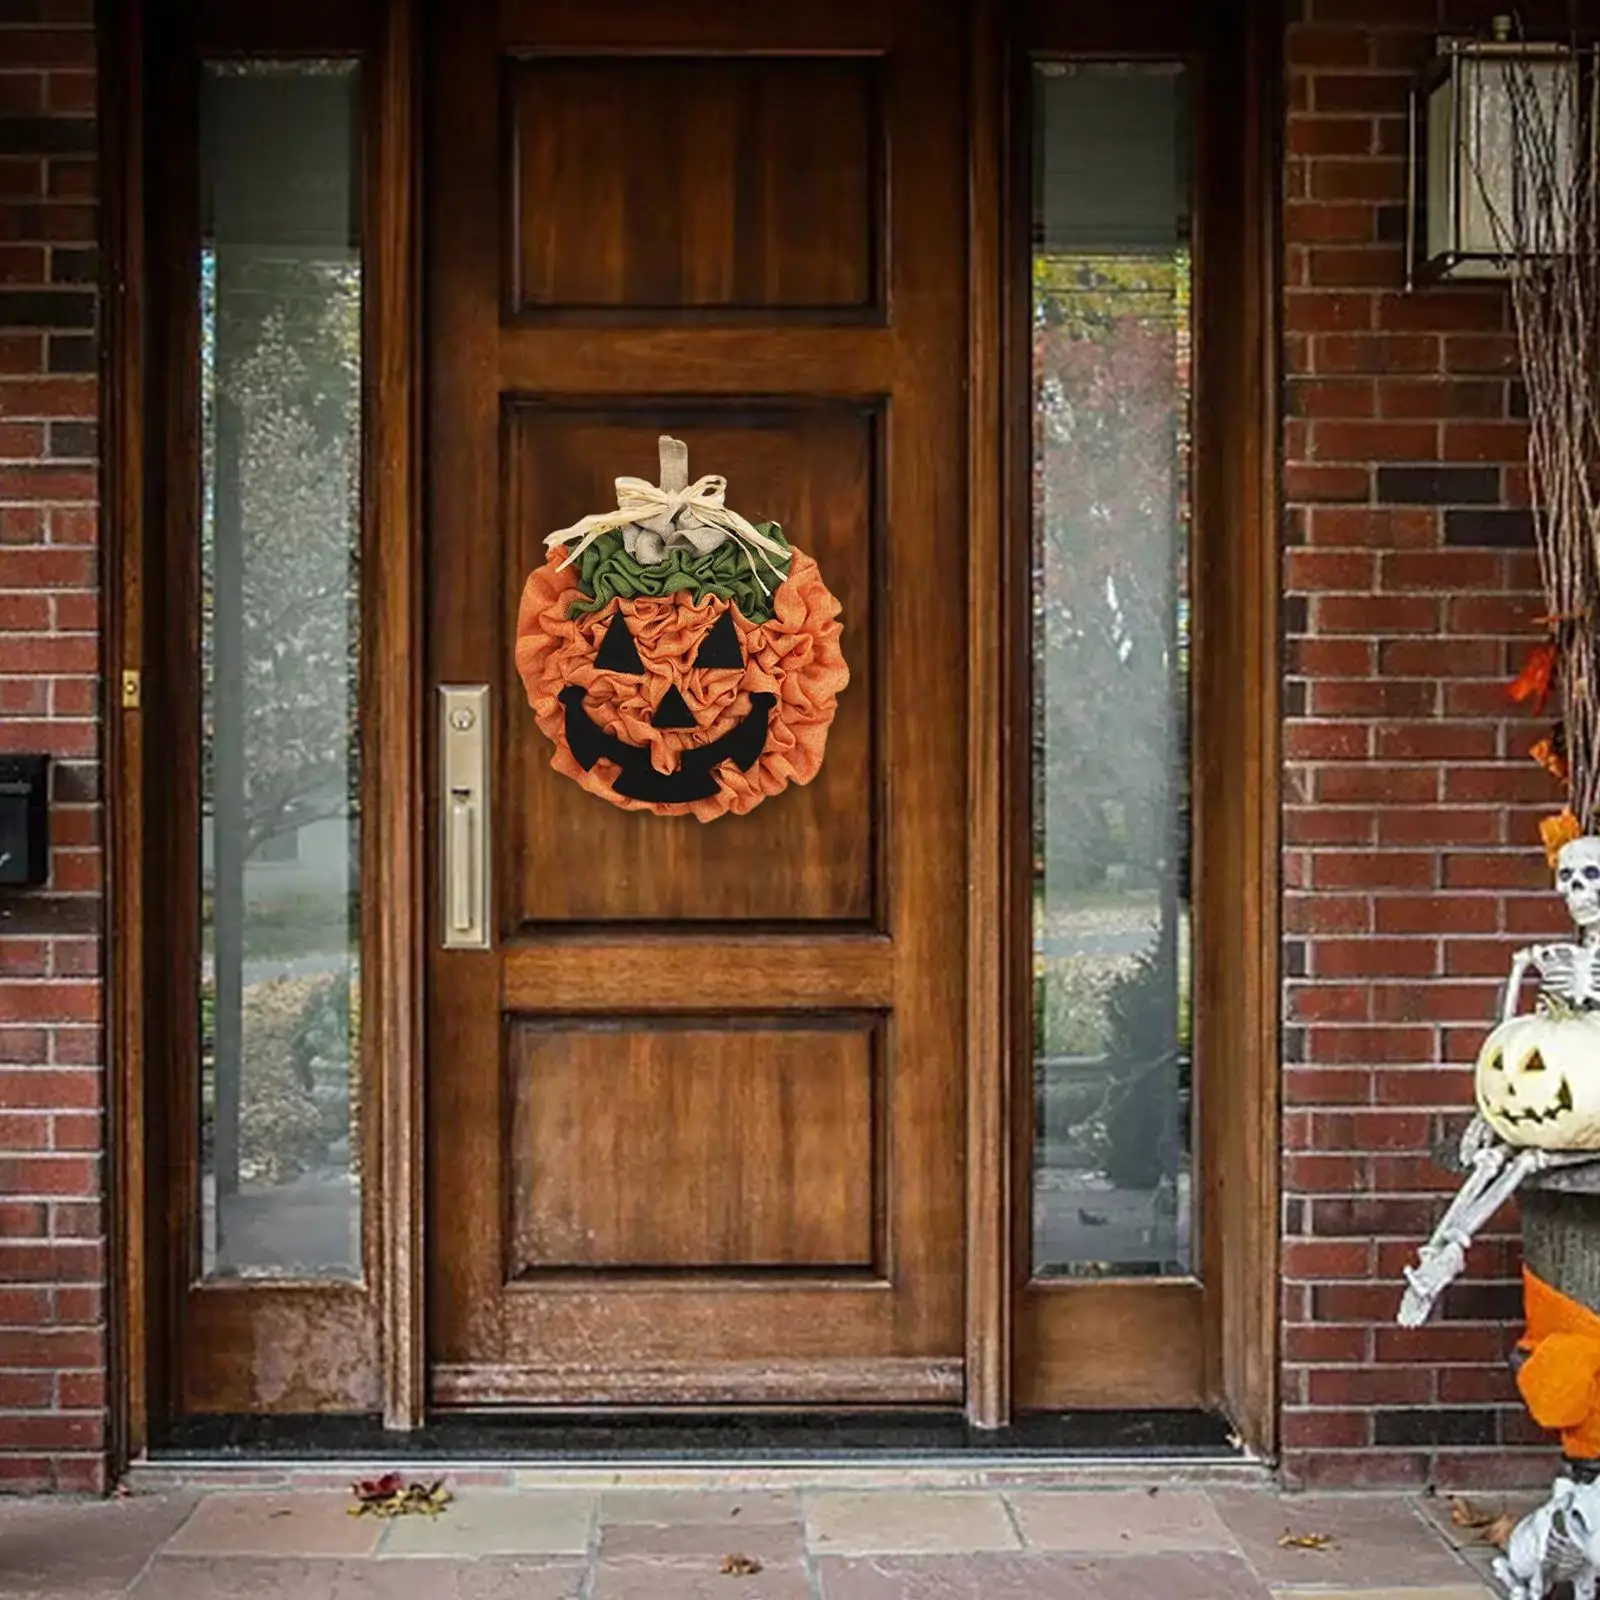 Halloween Pumpkin Door Hanging Wreath Decorations Durable 12inch for Balcony